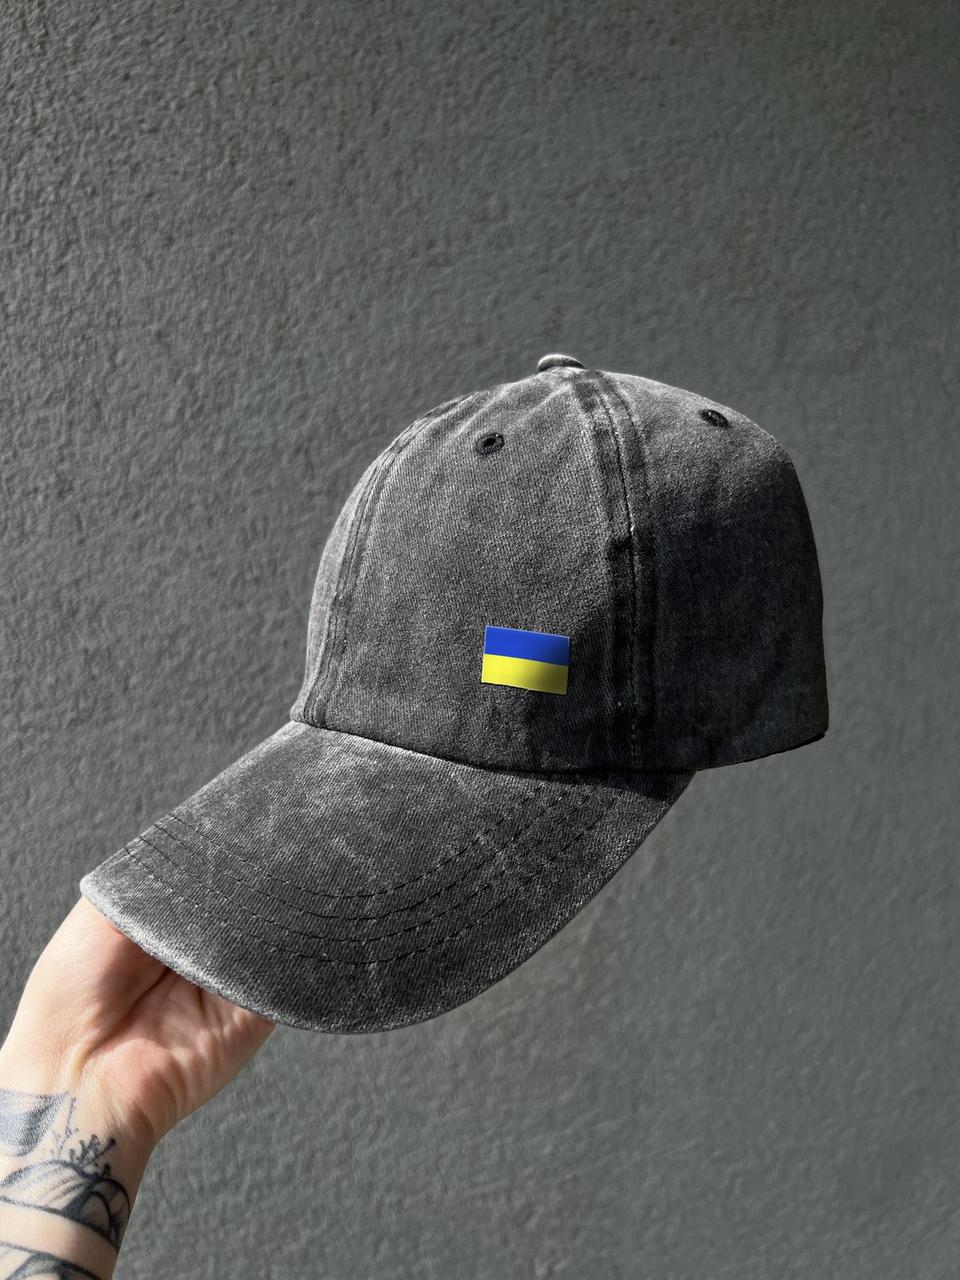 Кепка джинсовая серая UA, мужская джинсовая кепка с флагом Украины